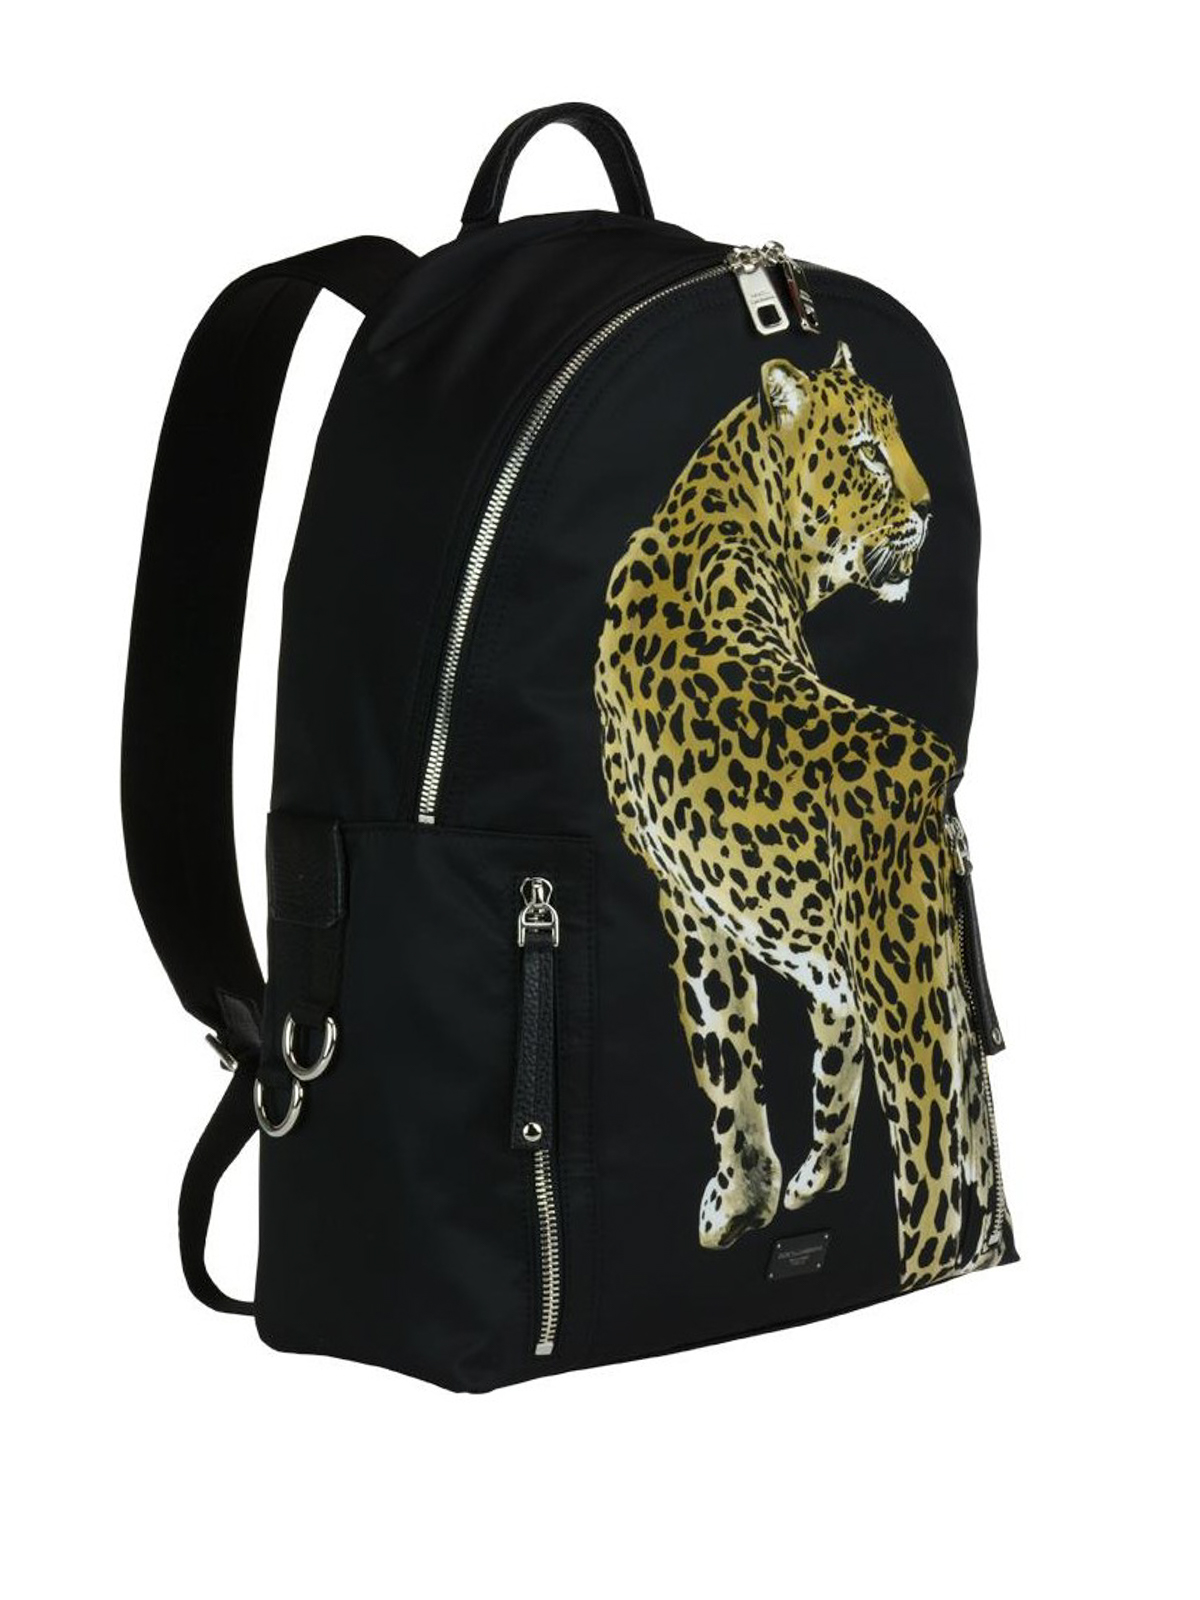 Dolce \u0026 Gabbana - Vulcano backpack with 